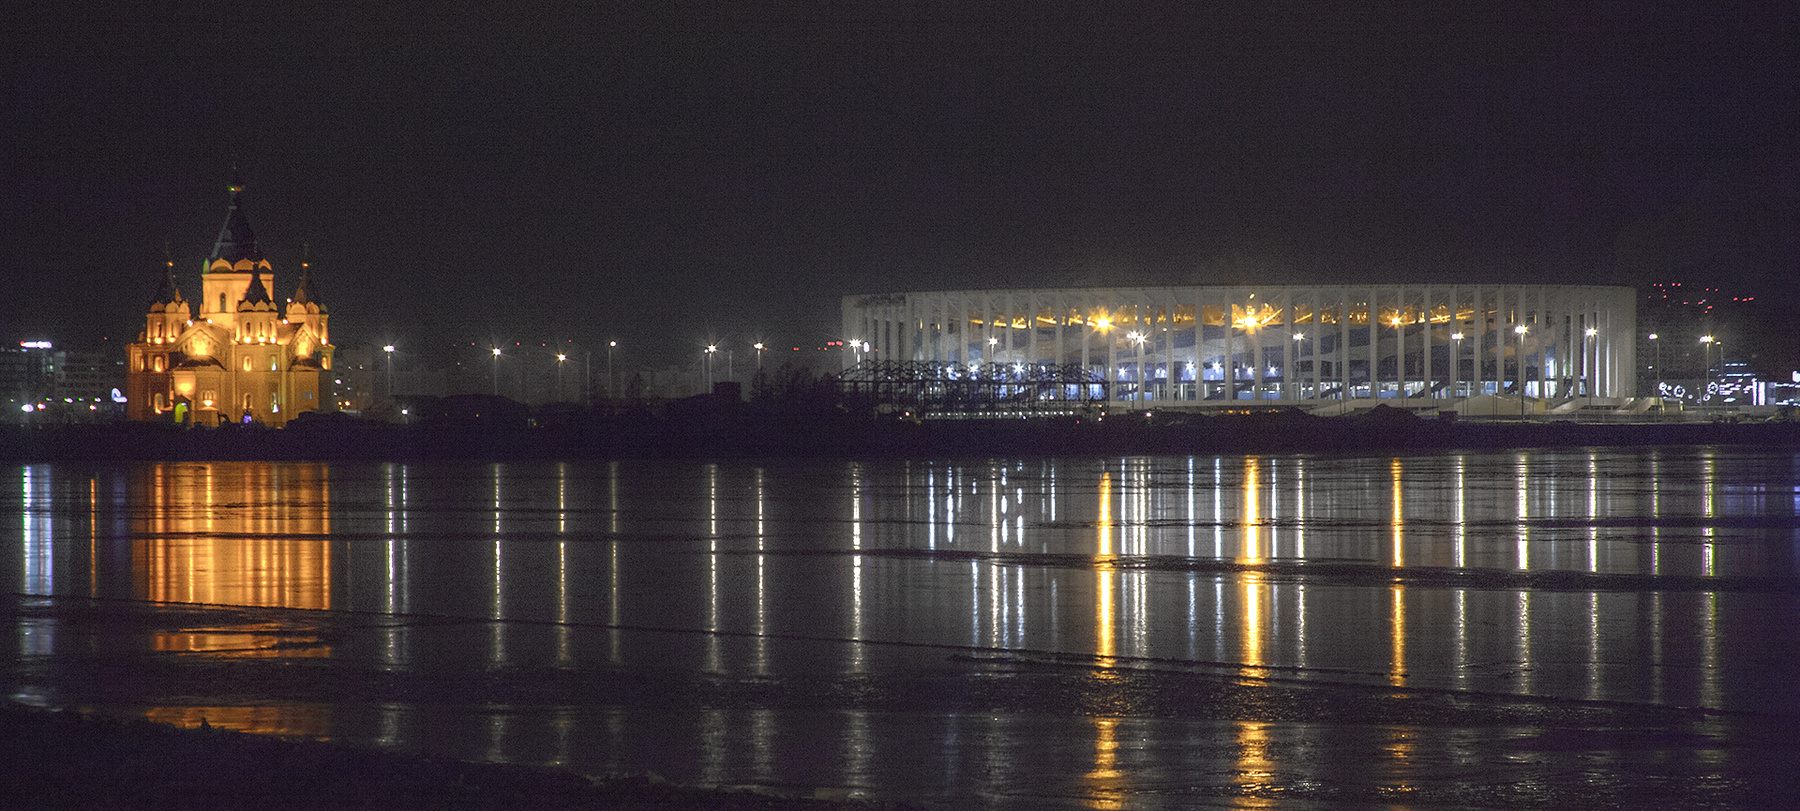 В ночь на Крещение. Нижний Новгород стадион ночь отражение